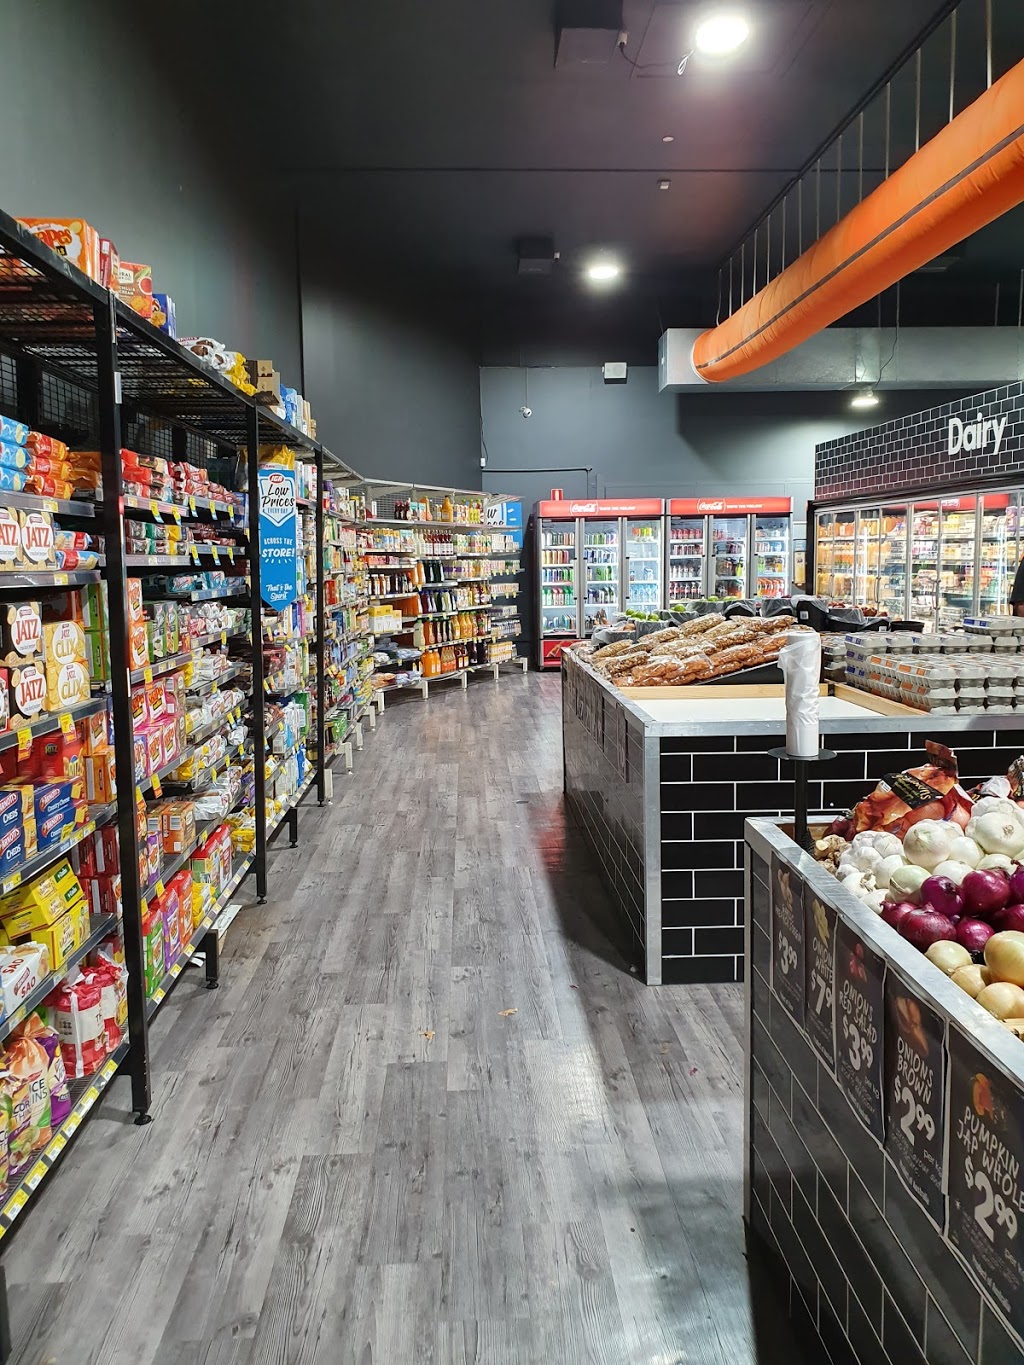 IGA LOGANLEA | supermarket | 1/5 Sarah St, Loganlea QLD 4131, Australia | 0738051899 OR +61 7 3805 1899